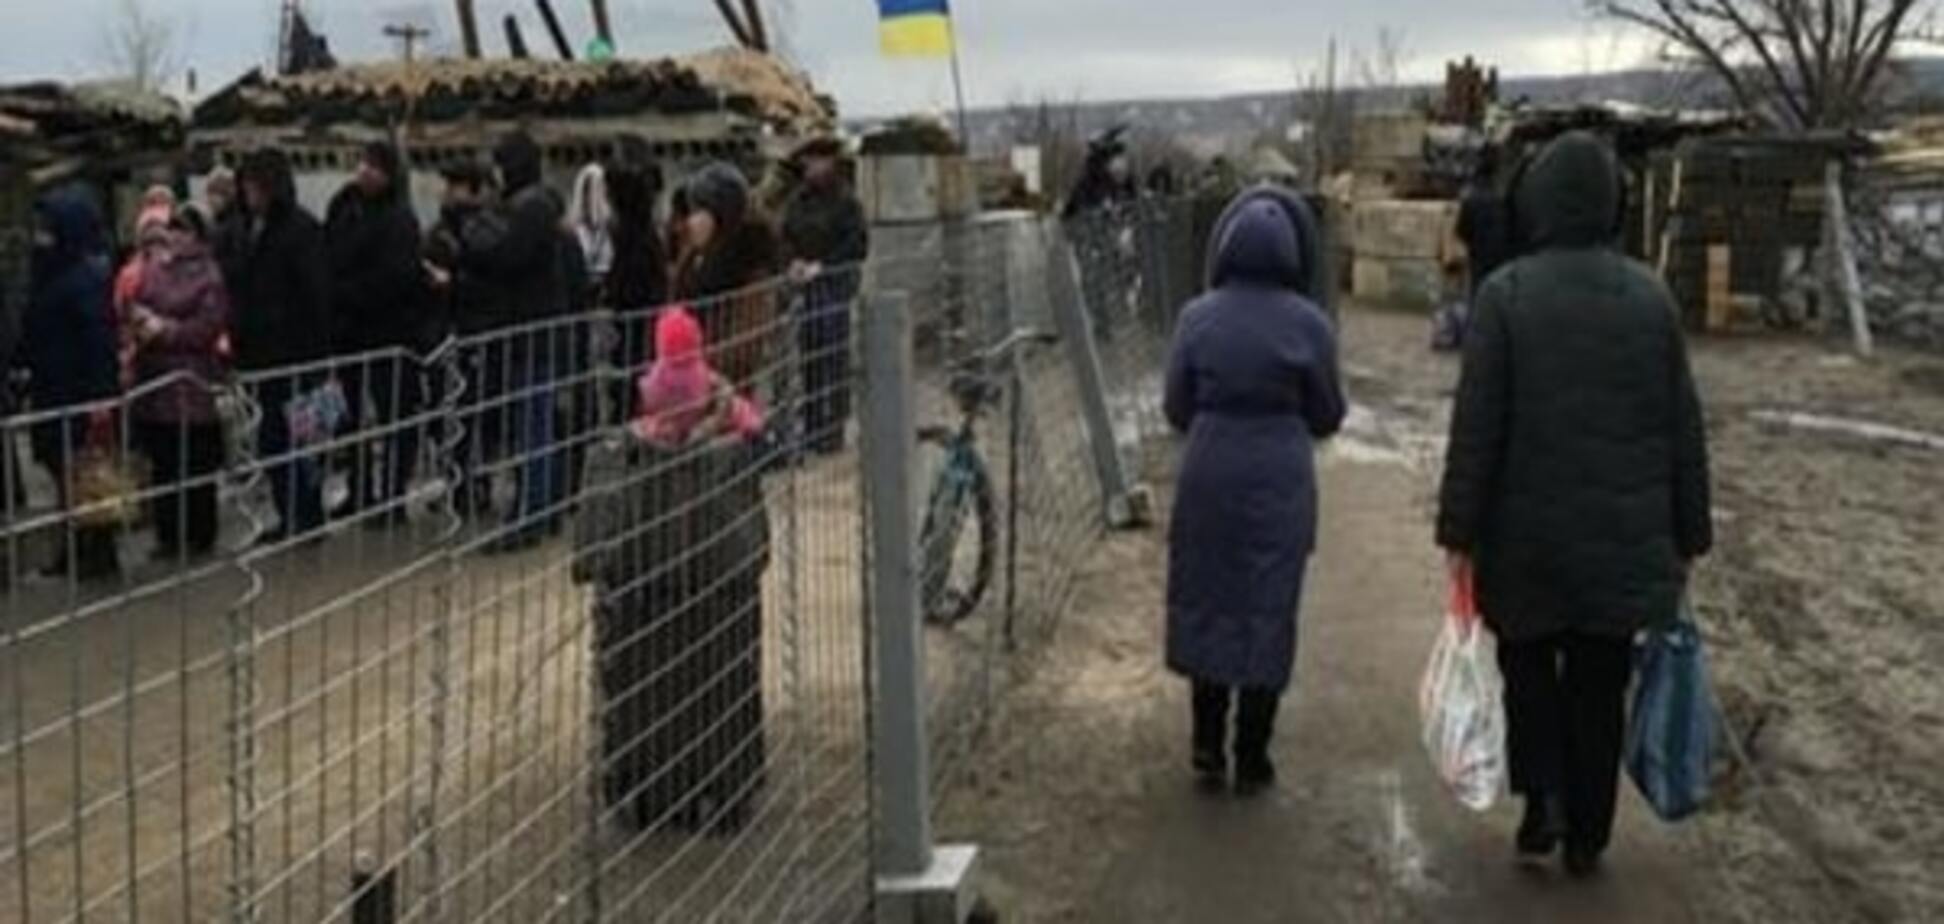 ООН: Півтора мільйона українців у зоні конфлікту на межі голоду